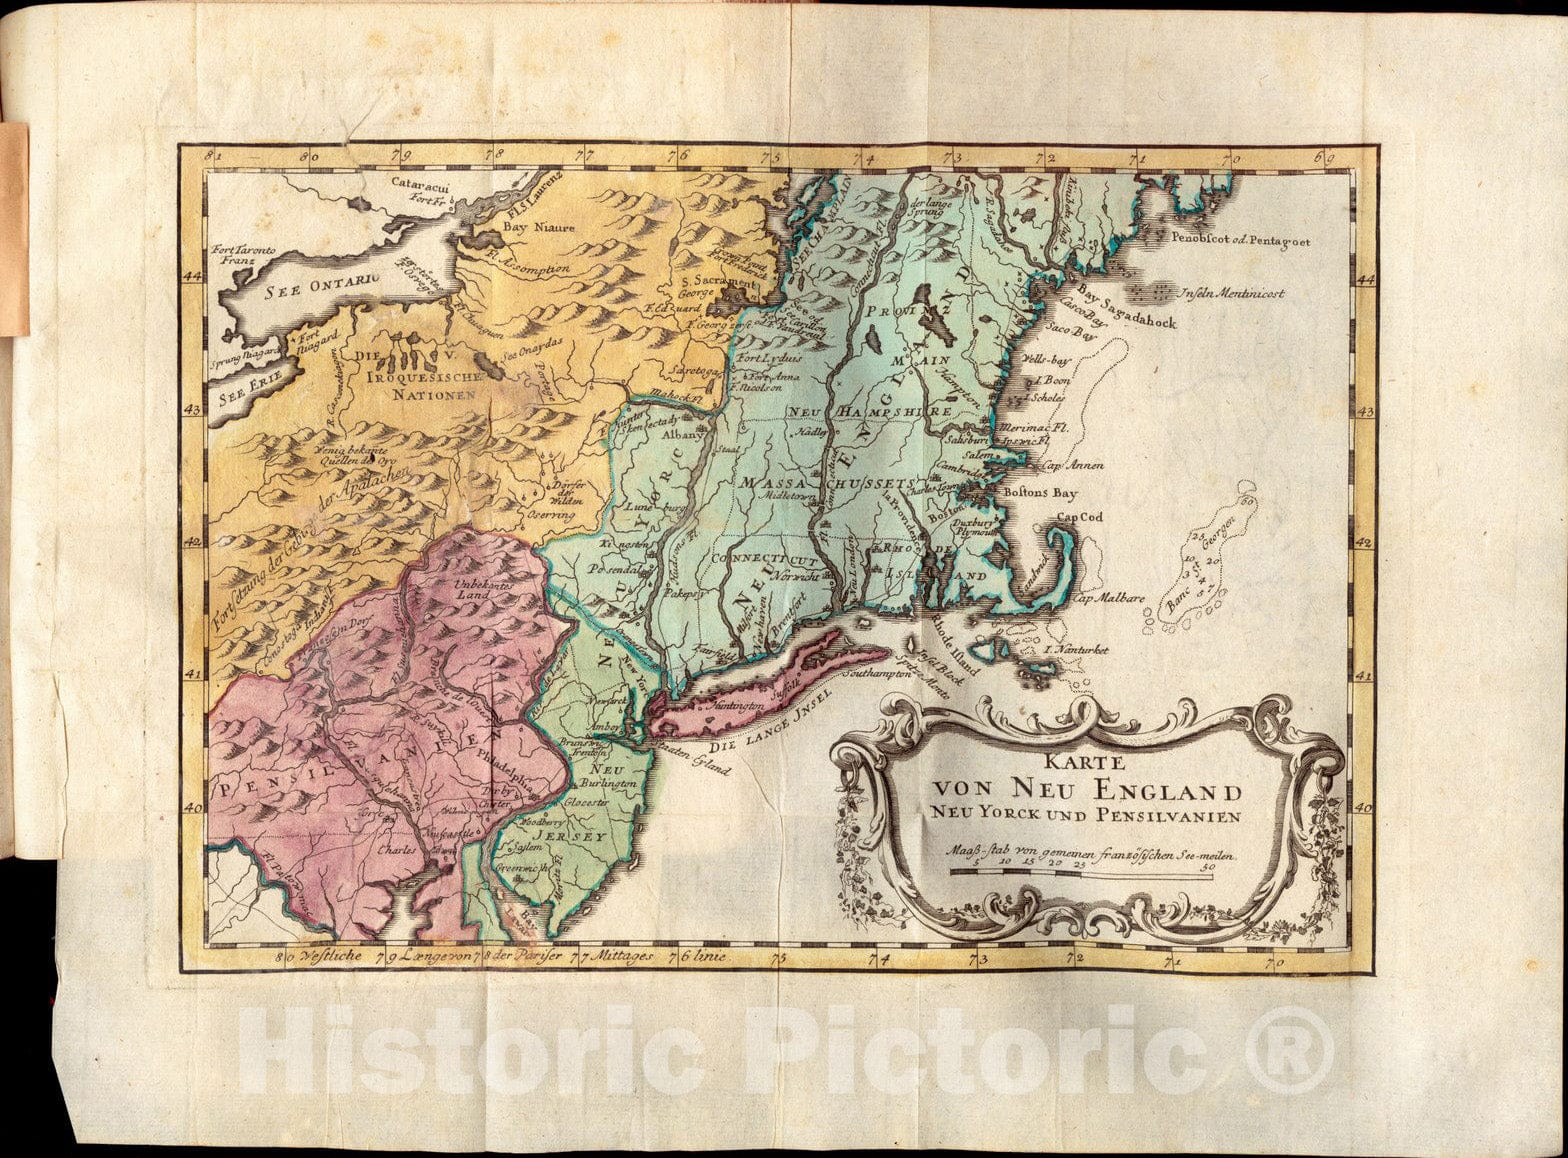 Historical Map, 1777 Karte von Neu England, Neu Yorck und Pensilvanien, Vintage Wall Art